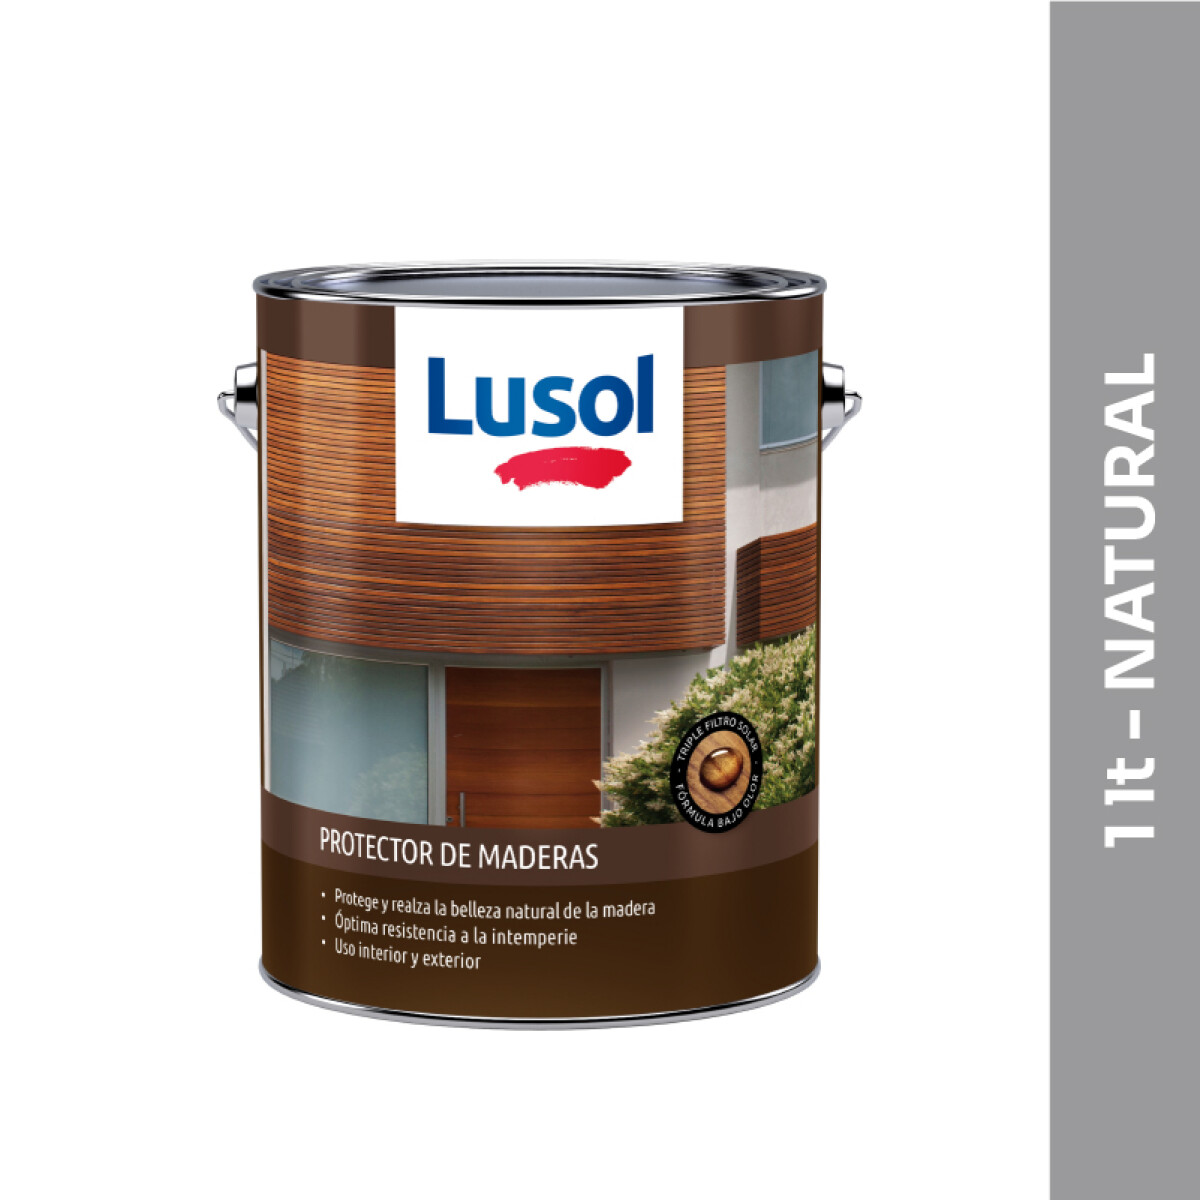 Protector de maderas Lusol - 1 lt - Natural 